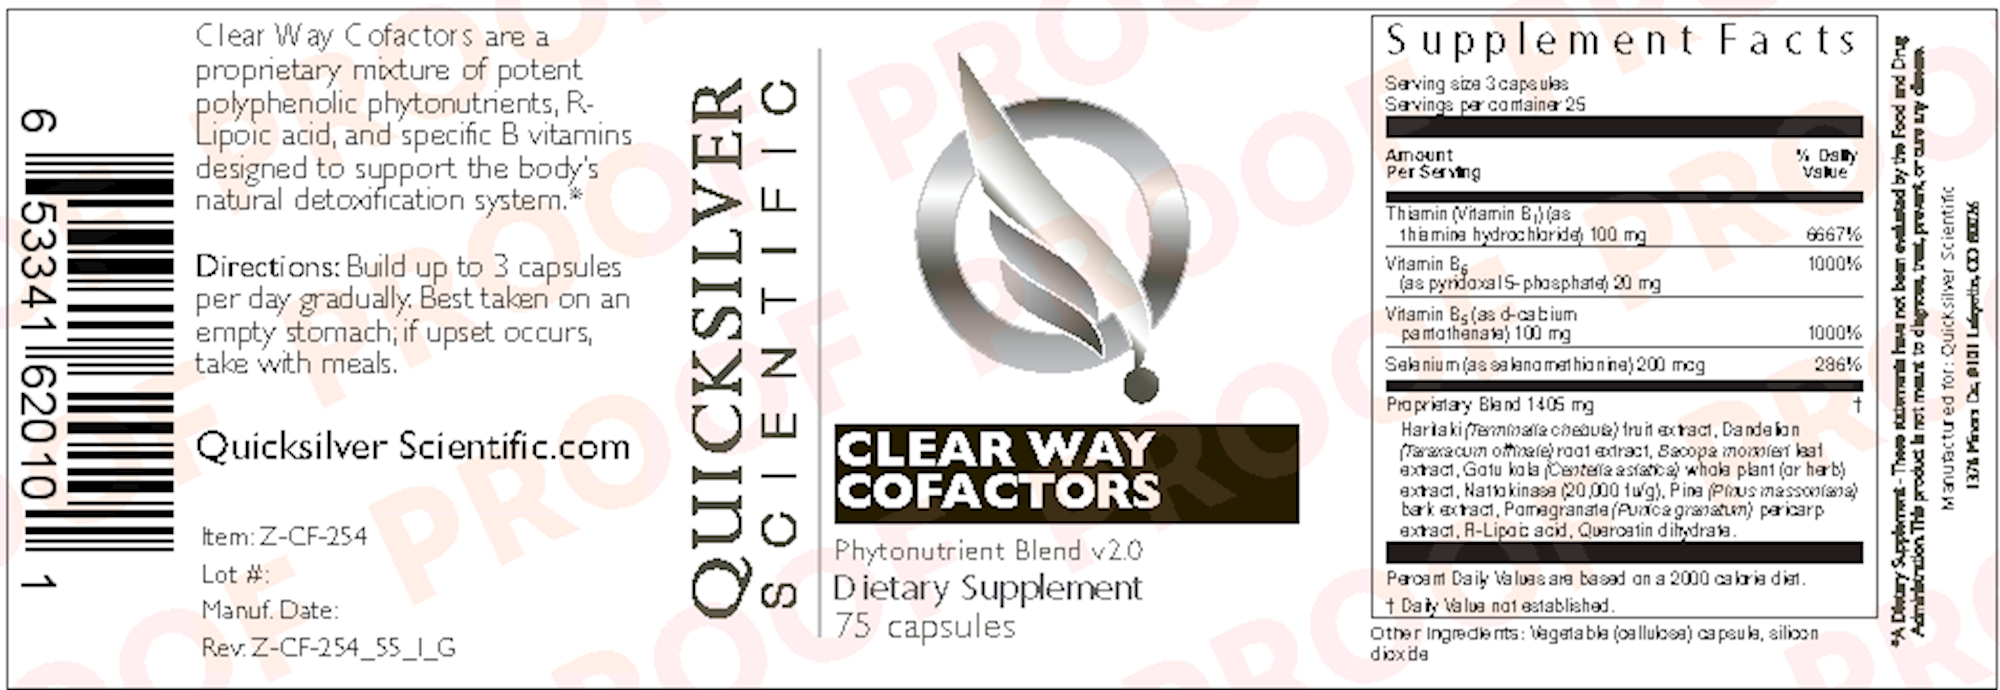 ClearWay Cofactors